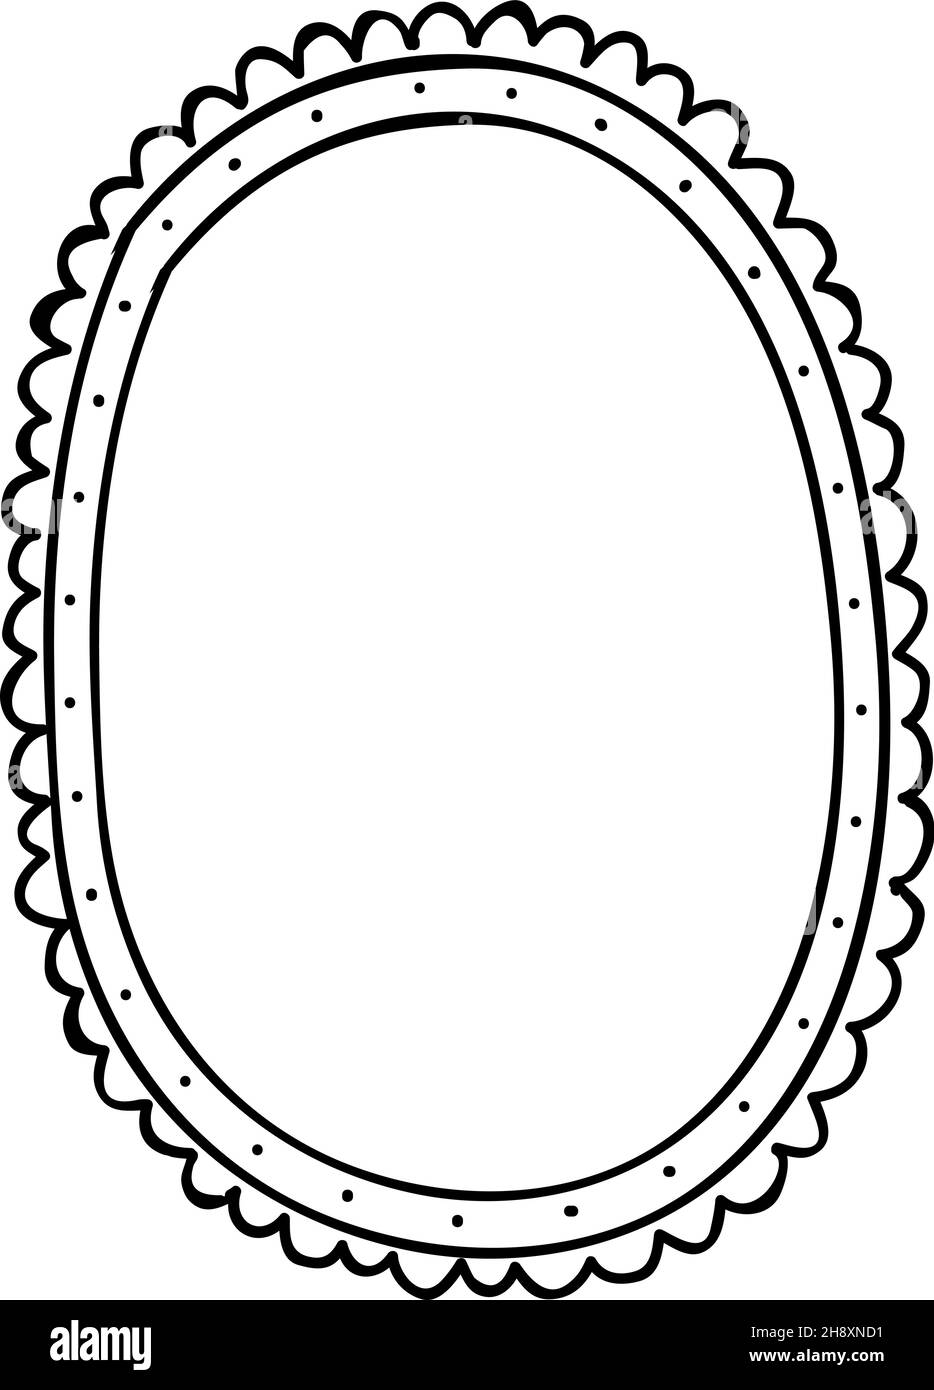 Niedliche ovale Rahmenvorlage. Doodle-Spiegel. Leere Form auf weißem Hintergrund isoliert Stock Vektor